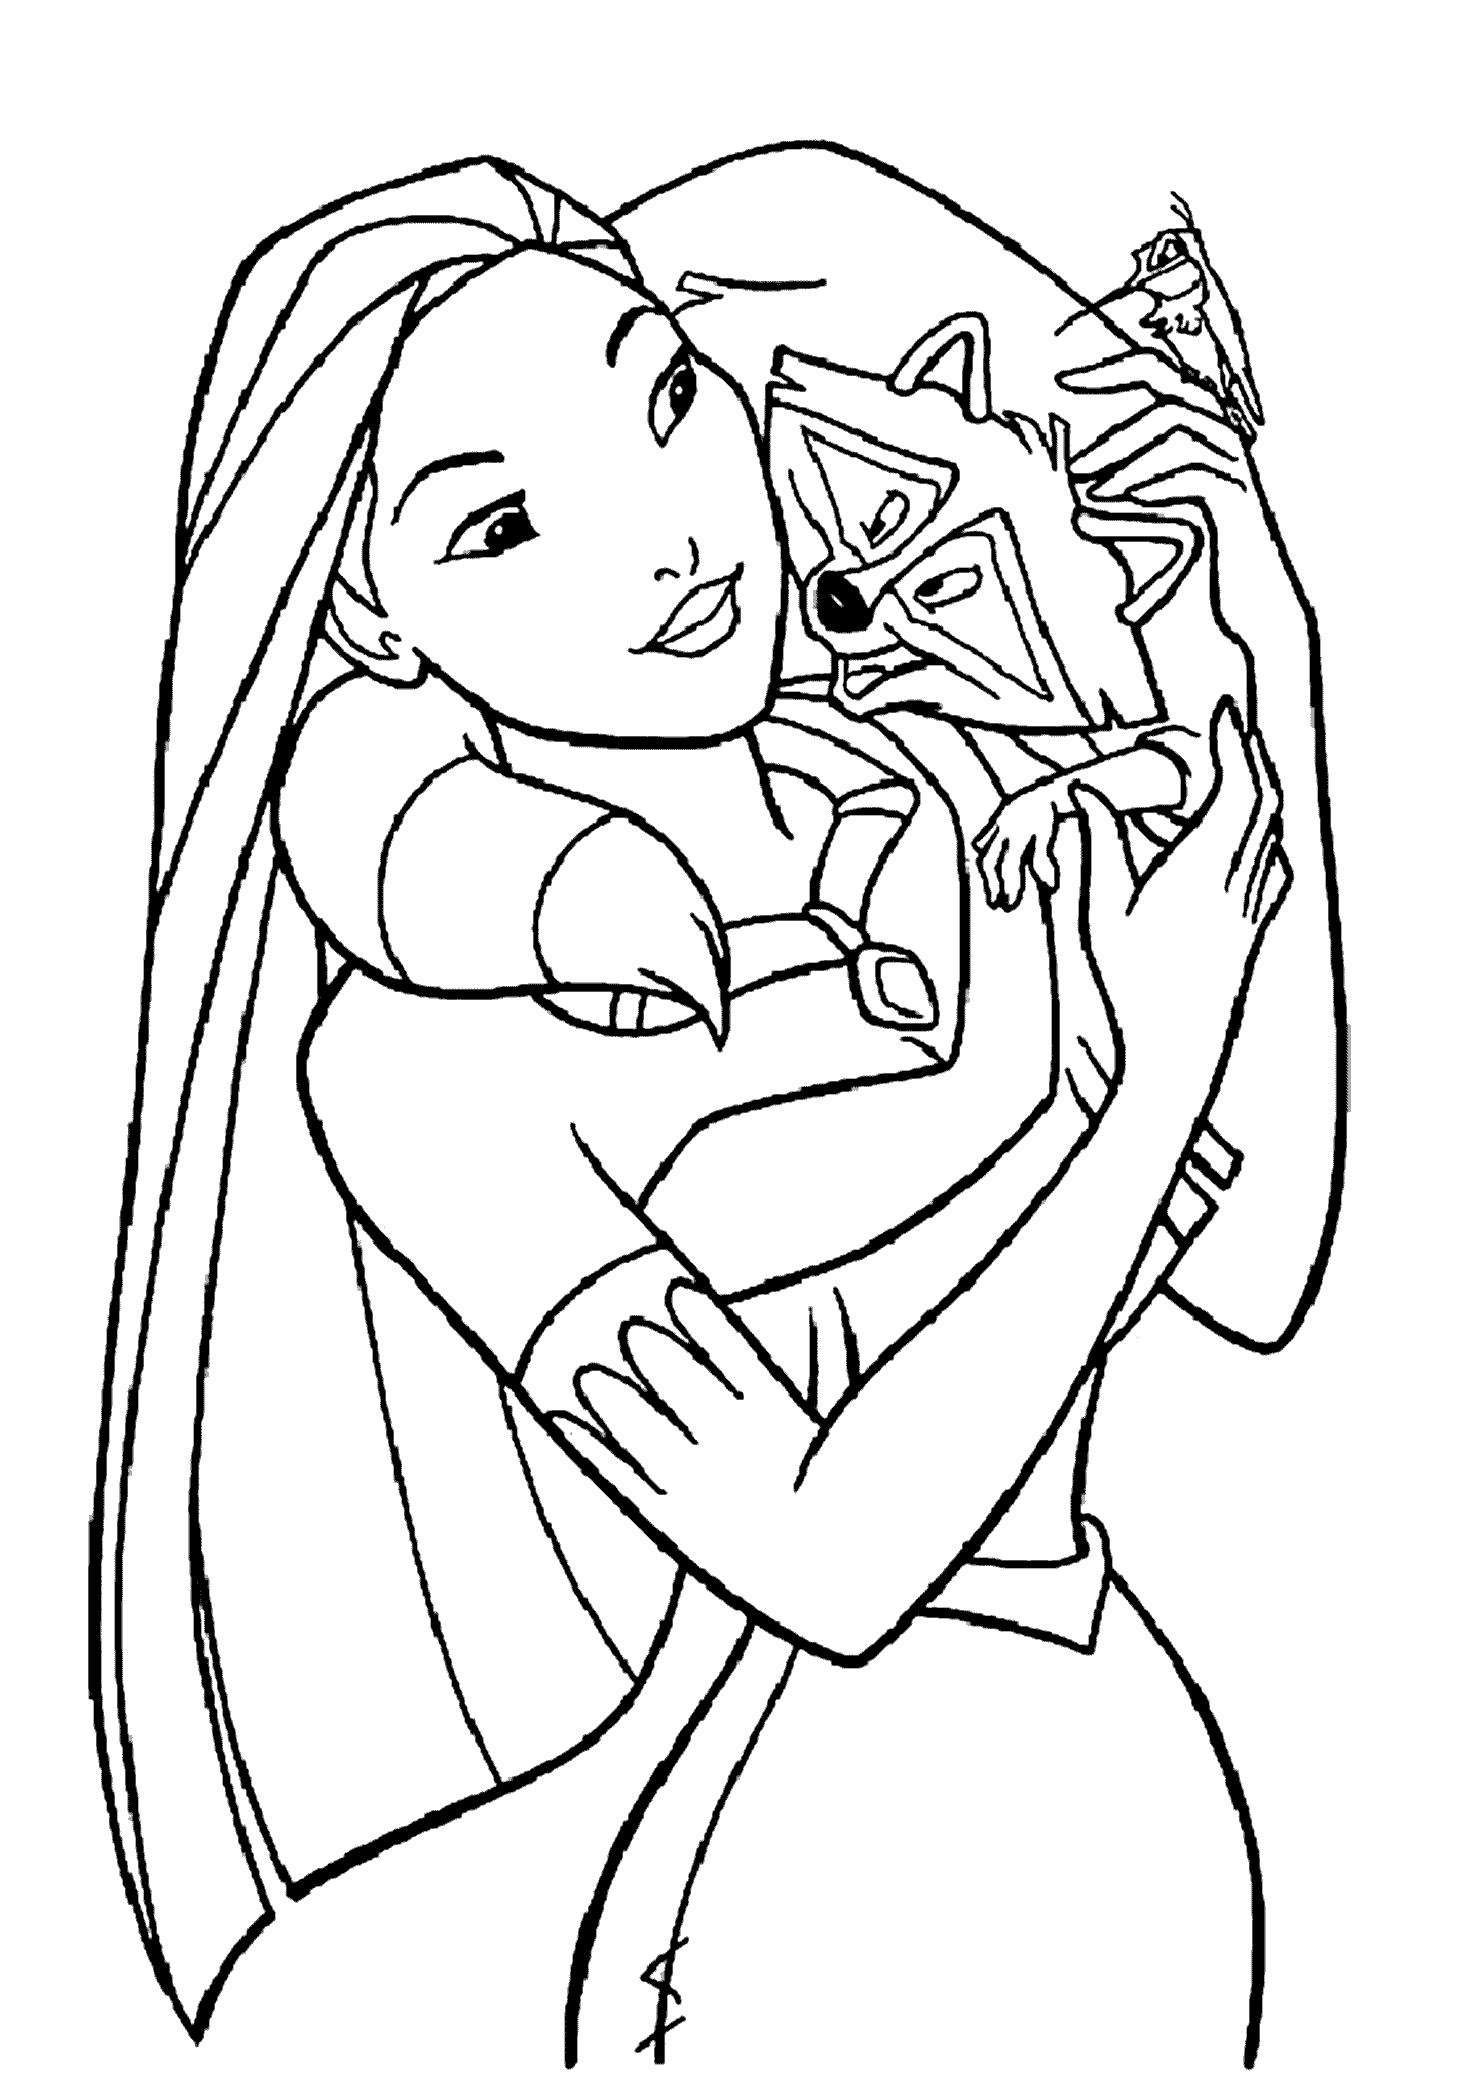 Princesa Pocahontas y Meeko de Pocahontas